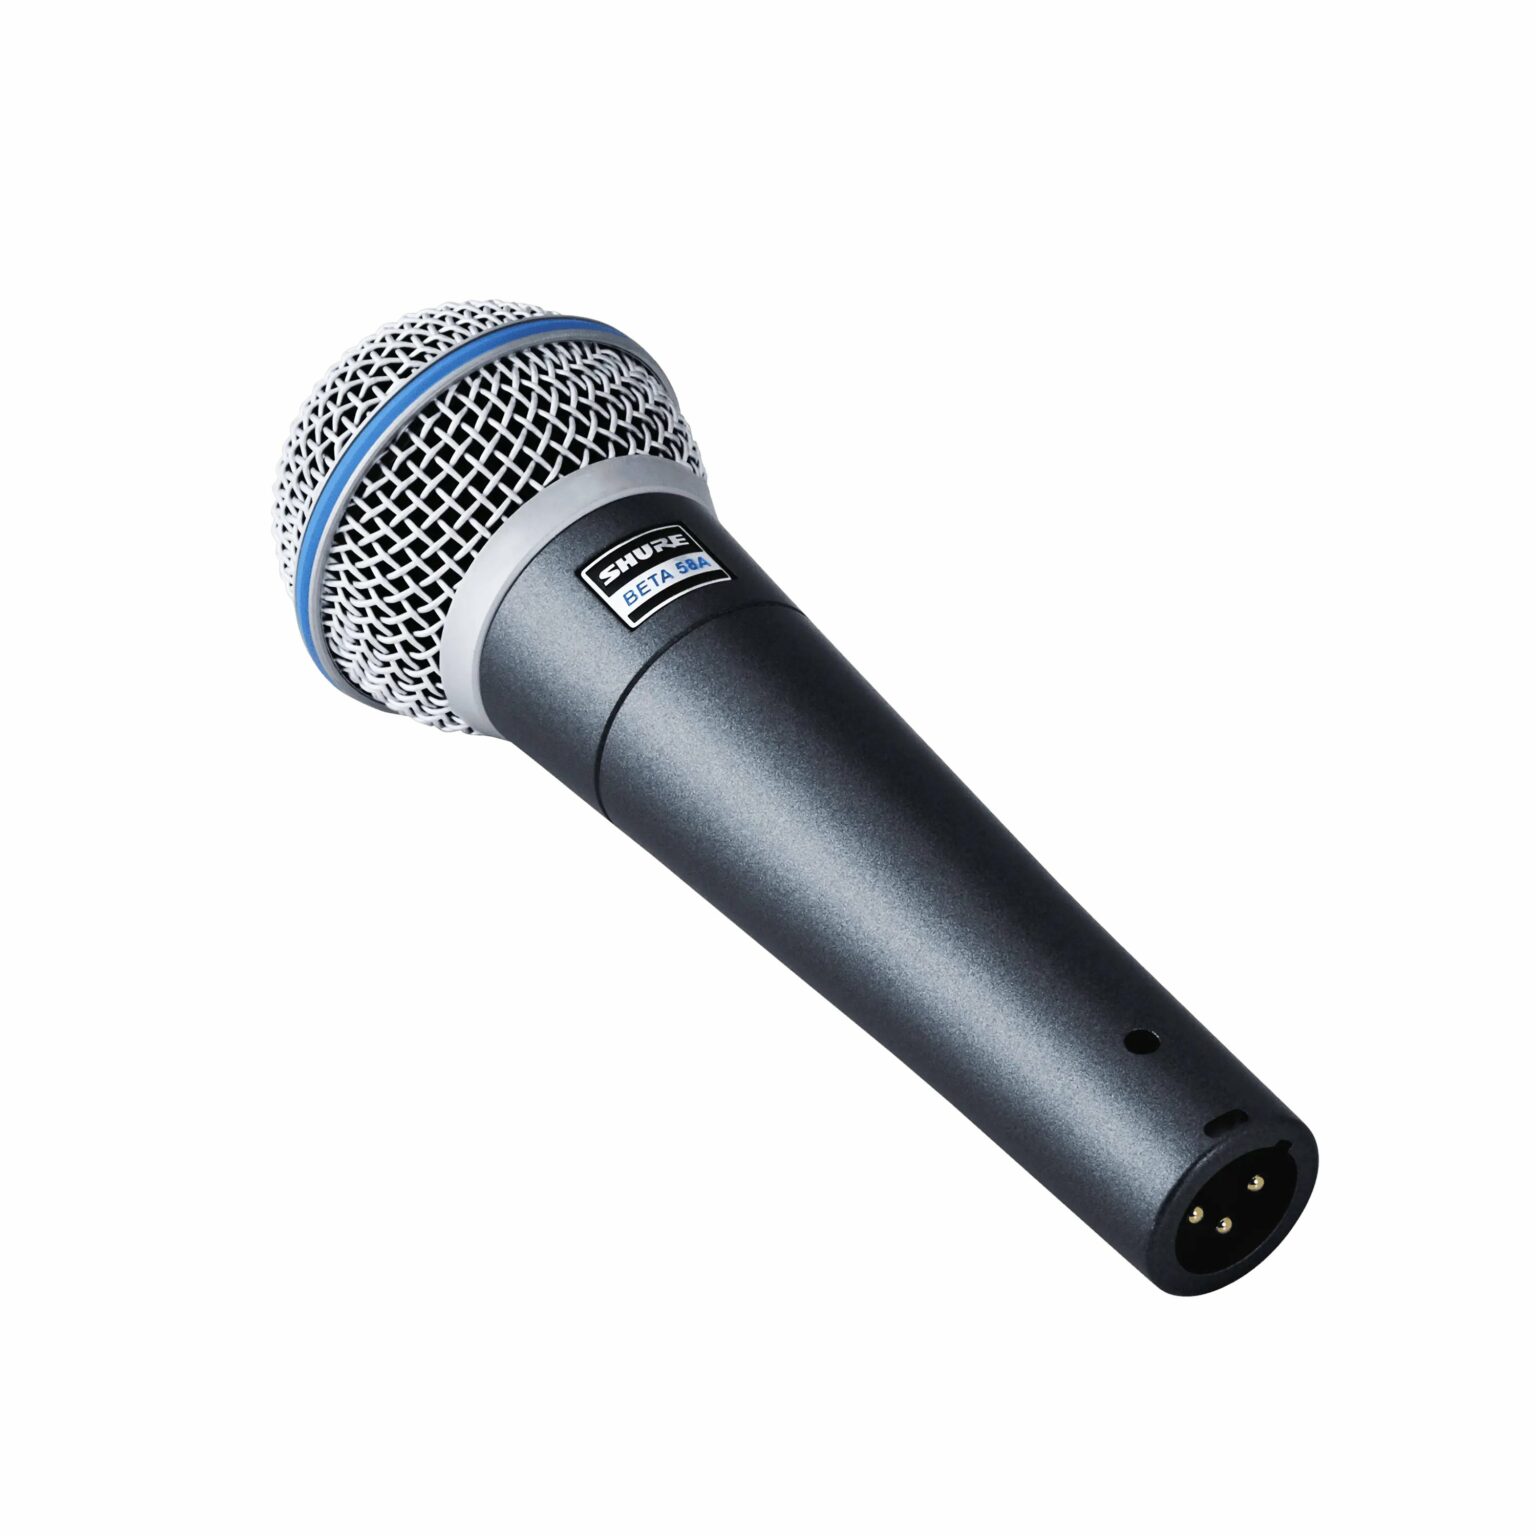 Microphone pour la voix BETA58A